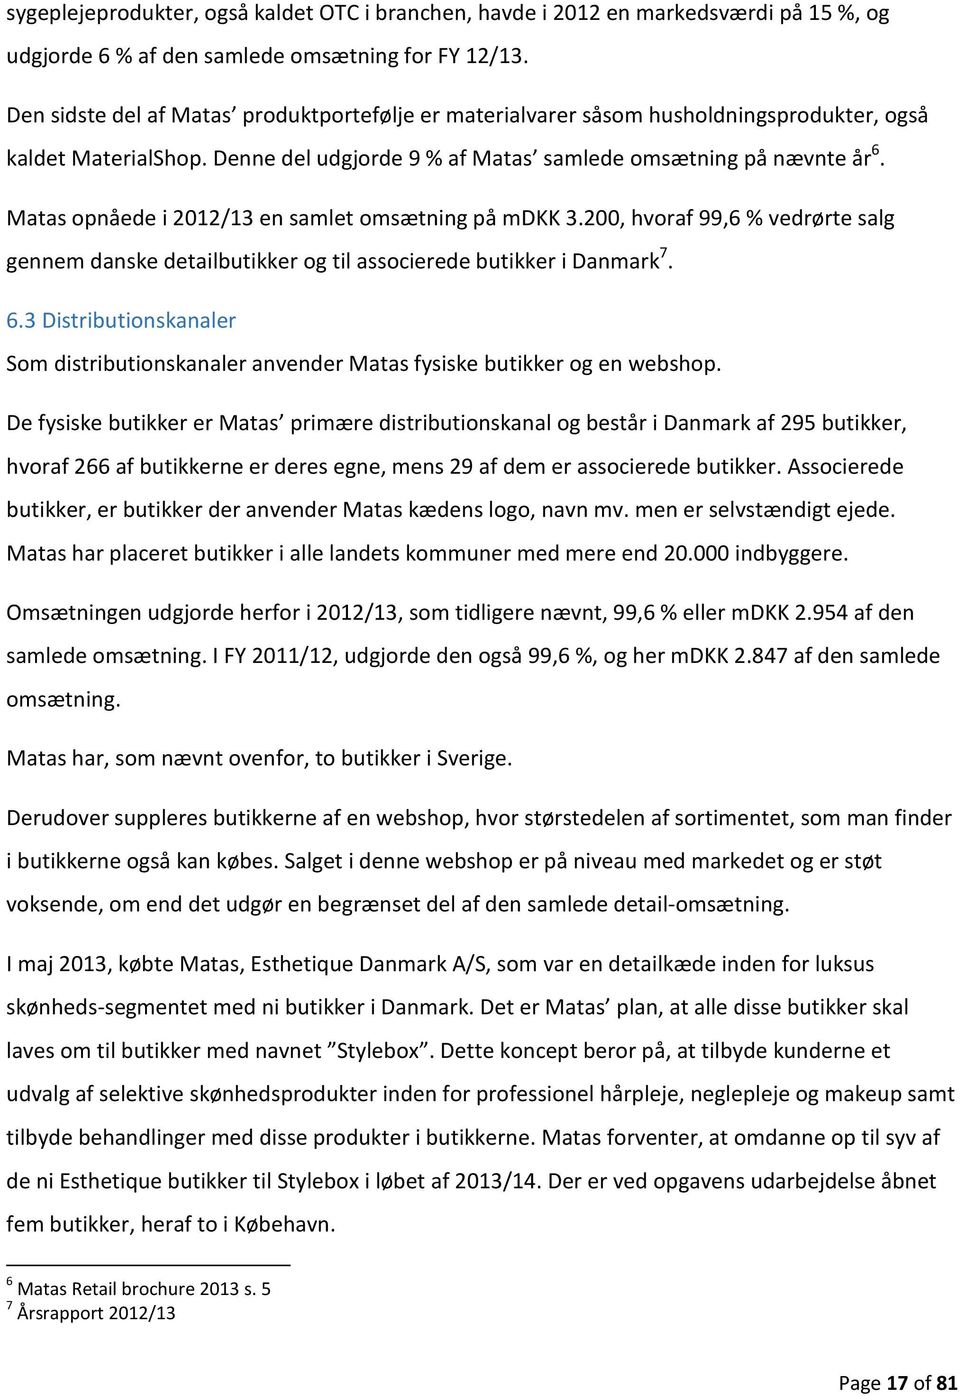 Matas opnåede i 2012/13 en samlet omsætning på mdkk 3.200, hvoraf 99,6 % vedrørte salg gennem danske detailbutikker og til associerede butikker i Danmark 7. 6.